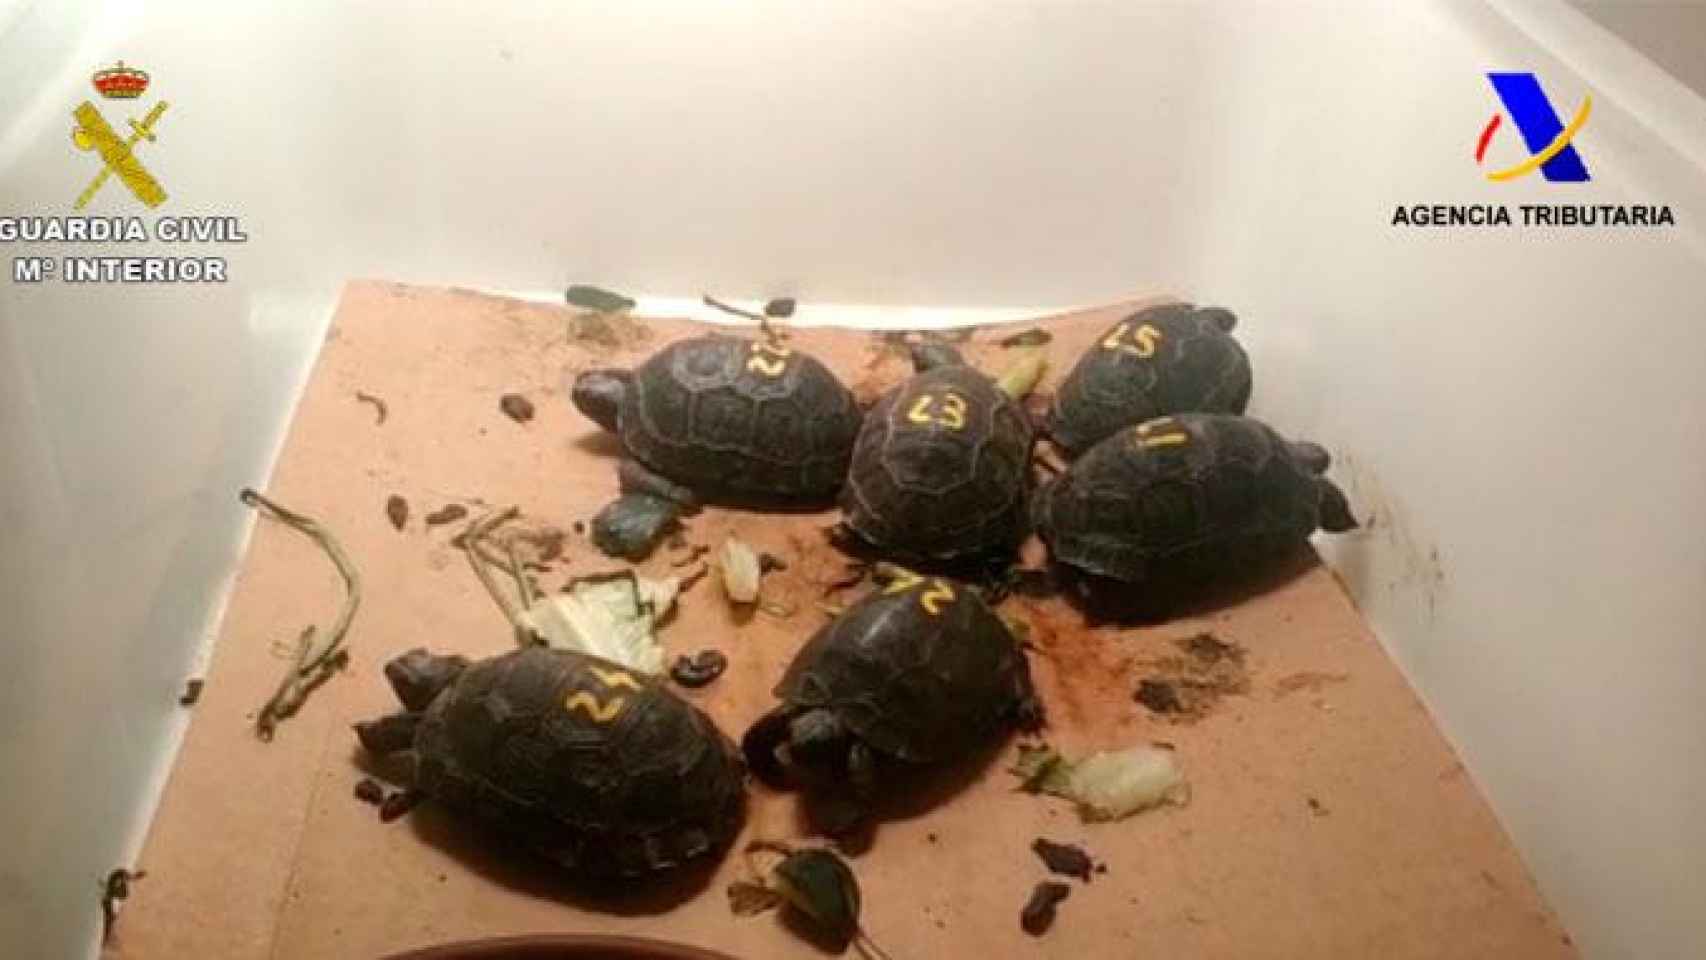 Las crías de tortuga en una caja / GUARDIA CIVIL